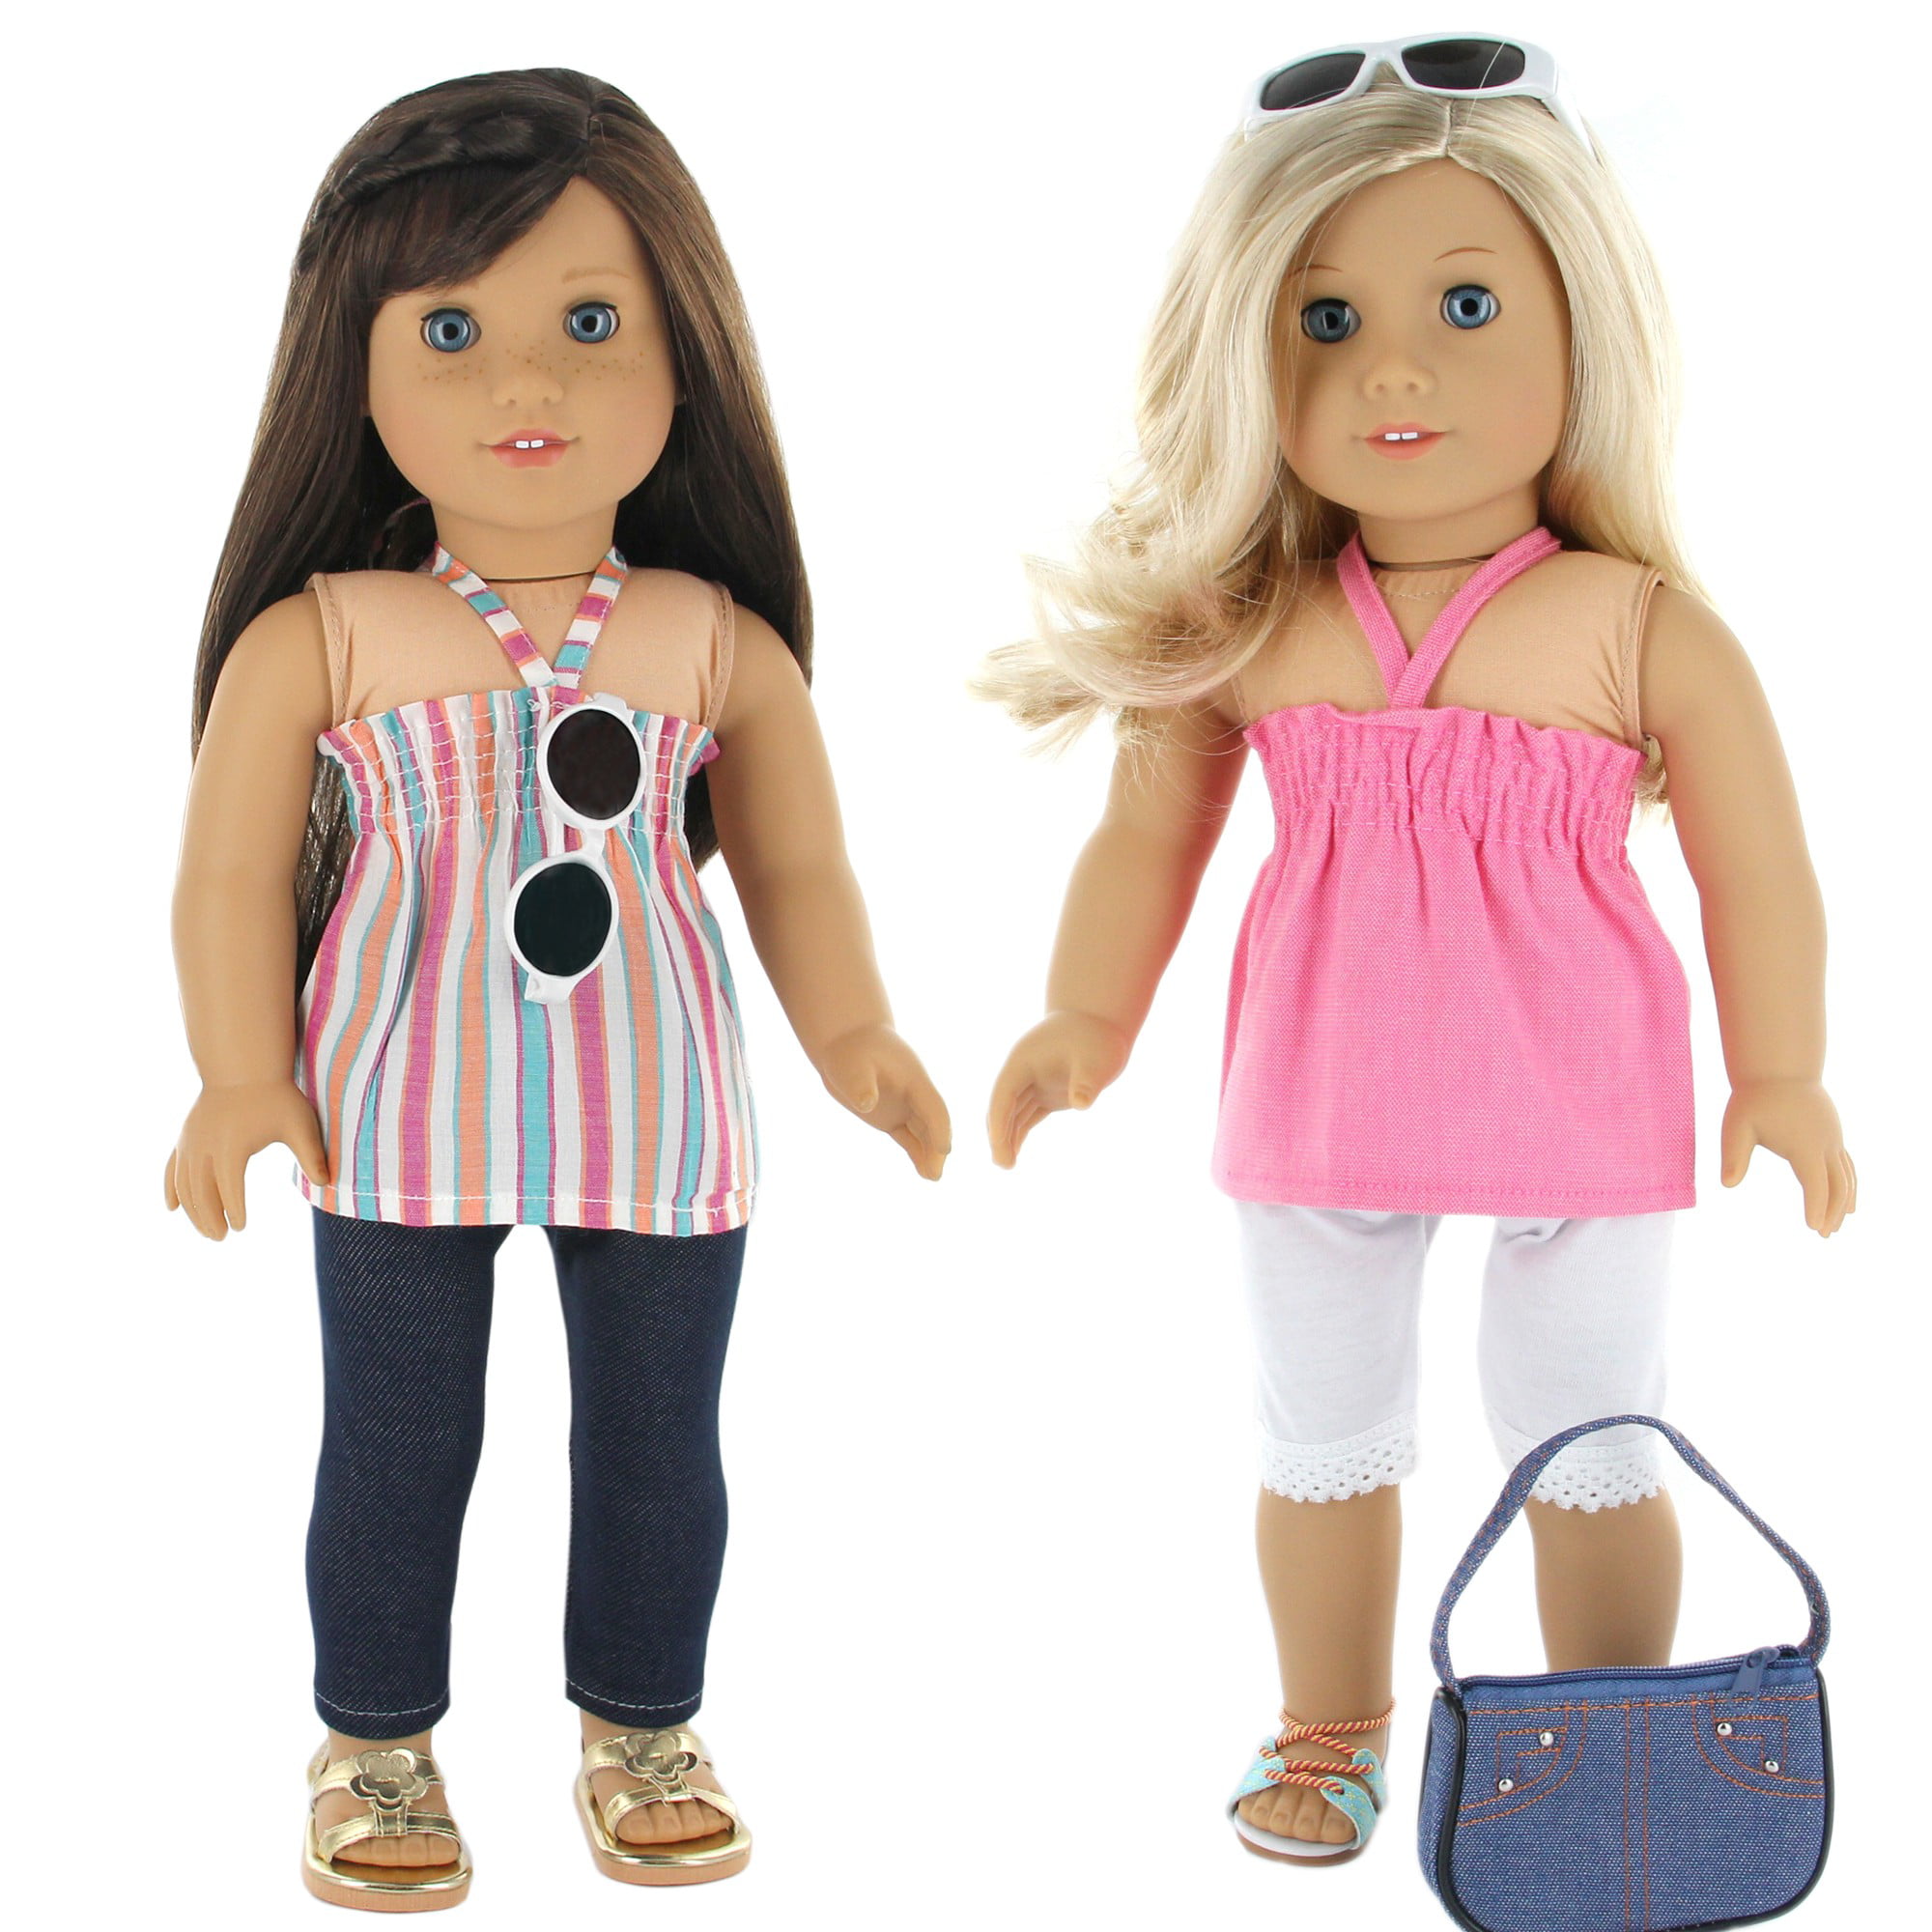 Одежда Американ герл. Одежда для кукол Американ герл. Американские куклы для девочек. American girl Doll одежда. Only dolls